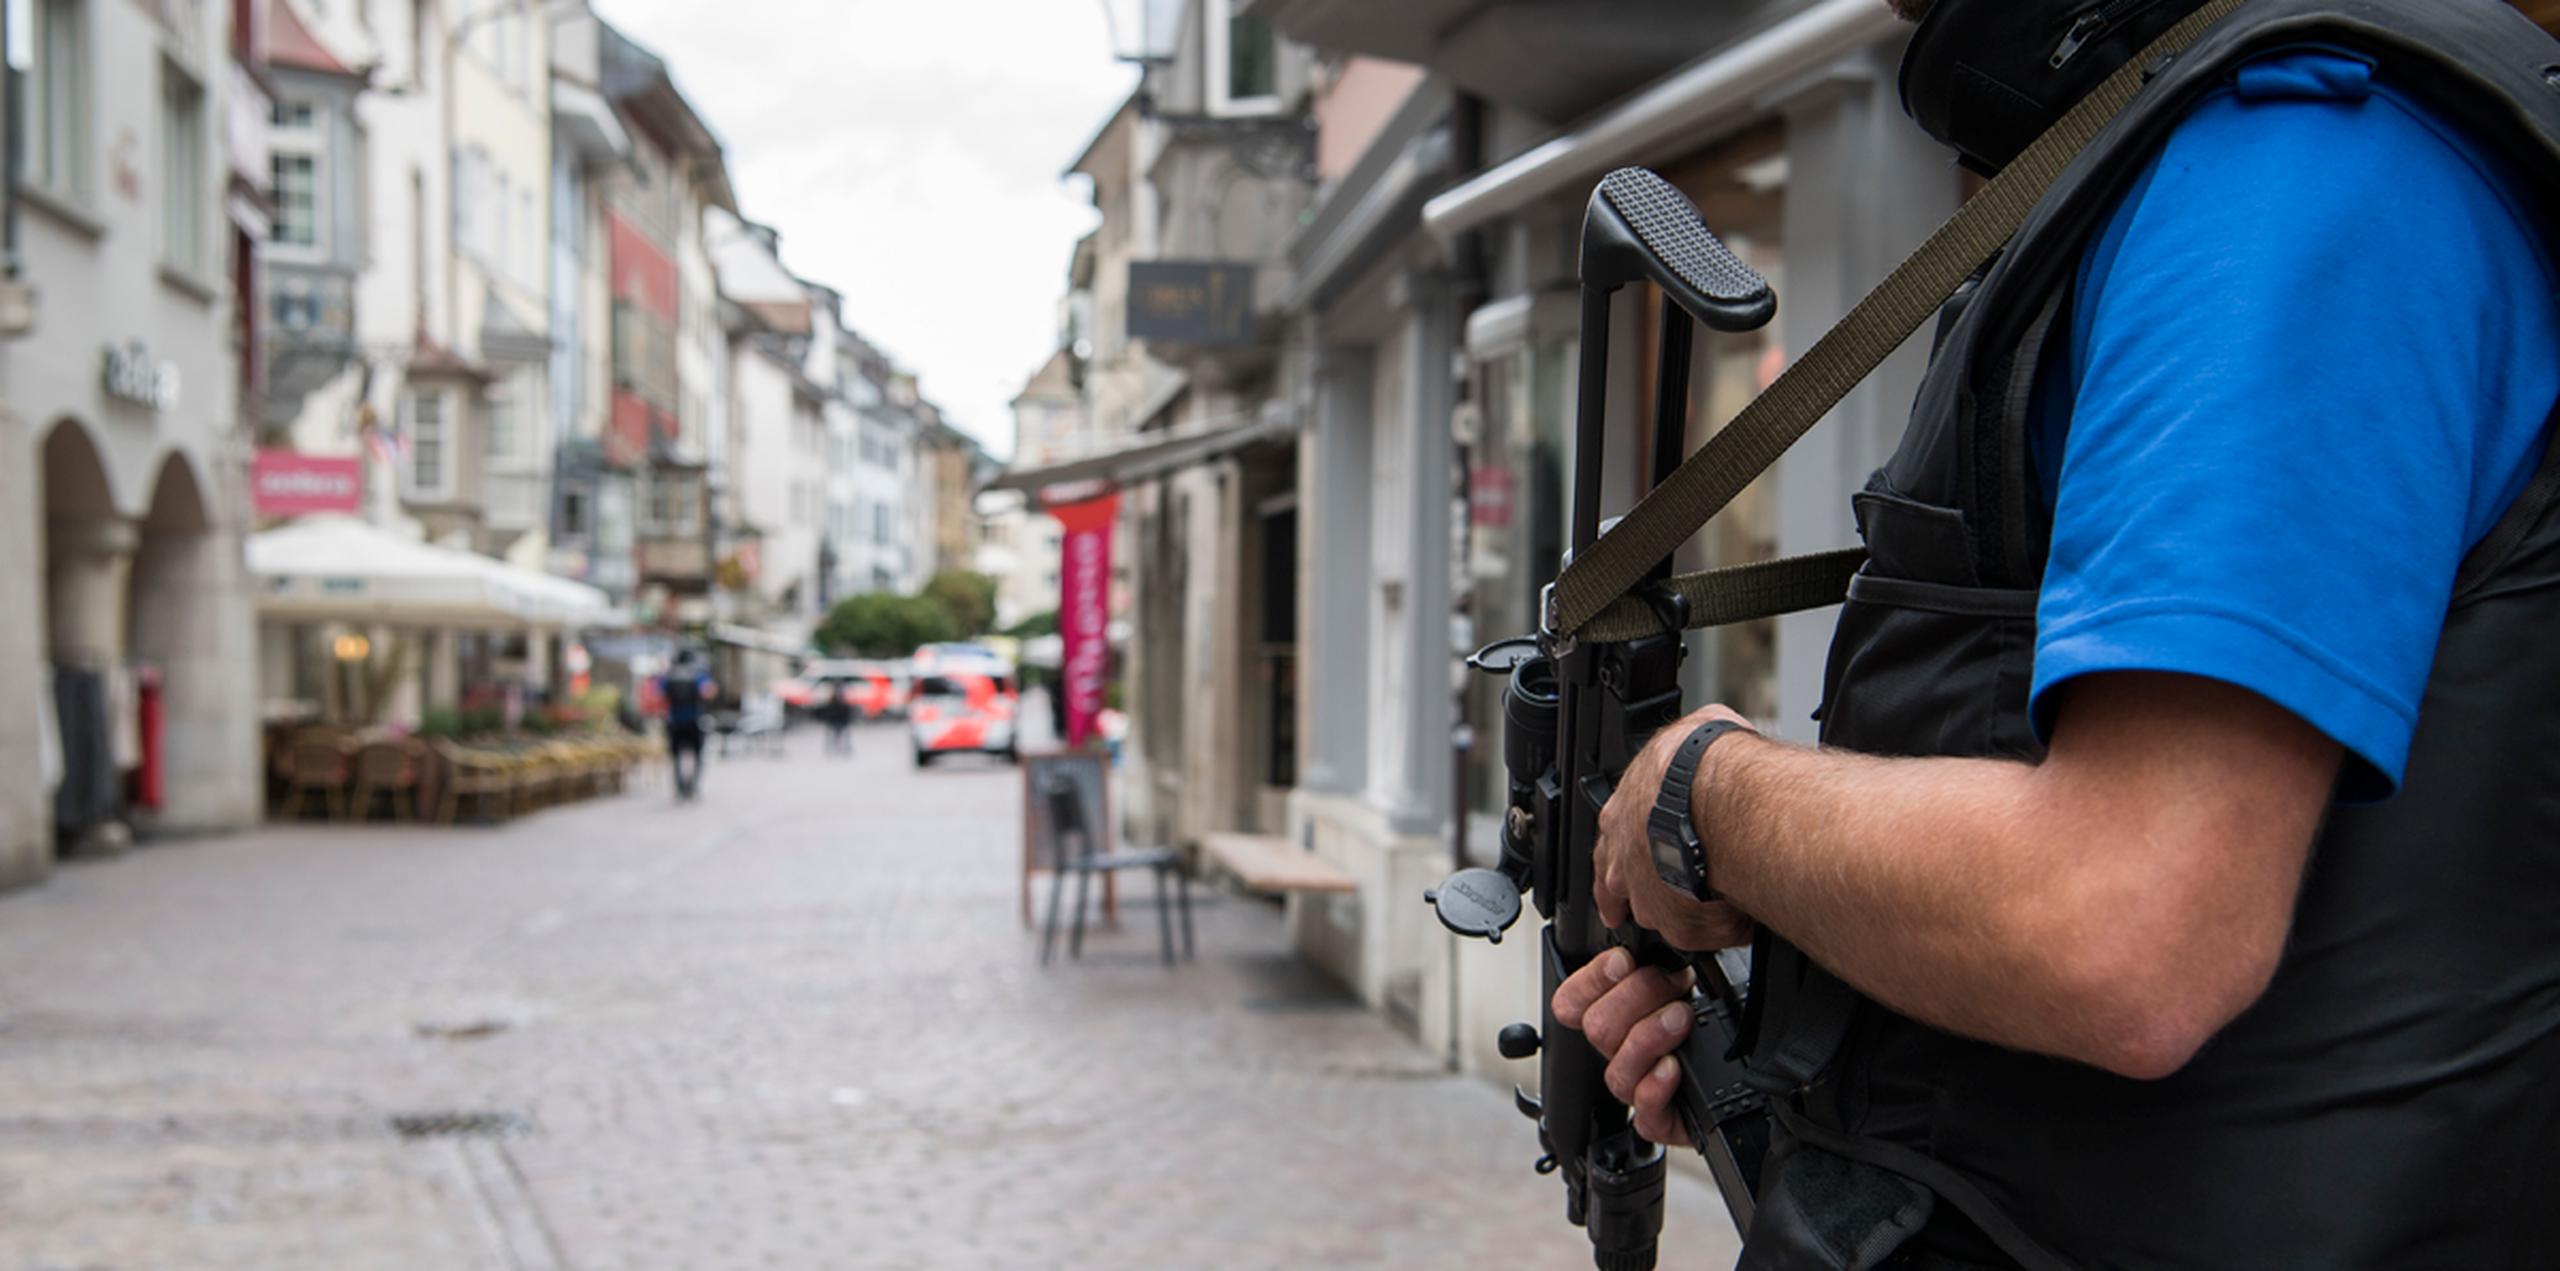 Policías se mantienen vigilando el centro histórico de Schaffhausen, en Suiza, mientras buscan a un hombre desconocido que atacó a la gente. (AP)